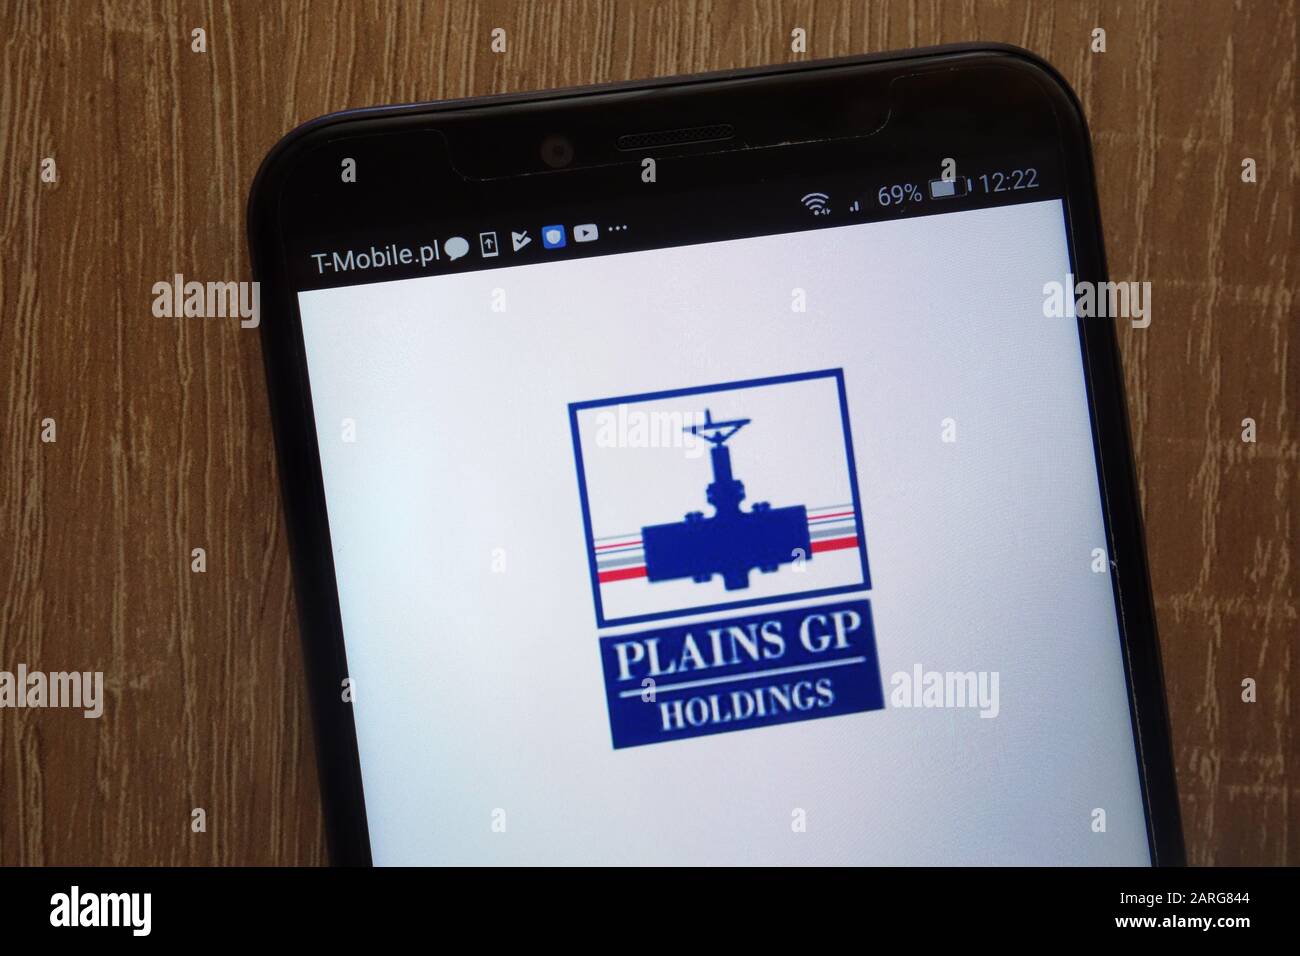 Logo della pianura GP Holdings visualizzato su uno smartphone moderno Foto Stock